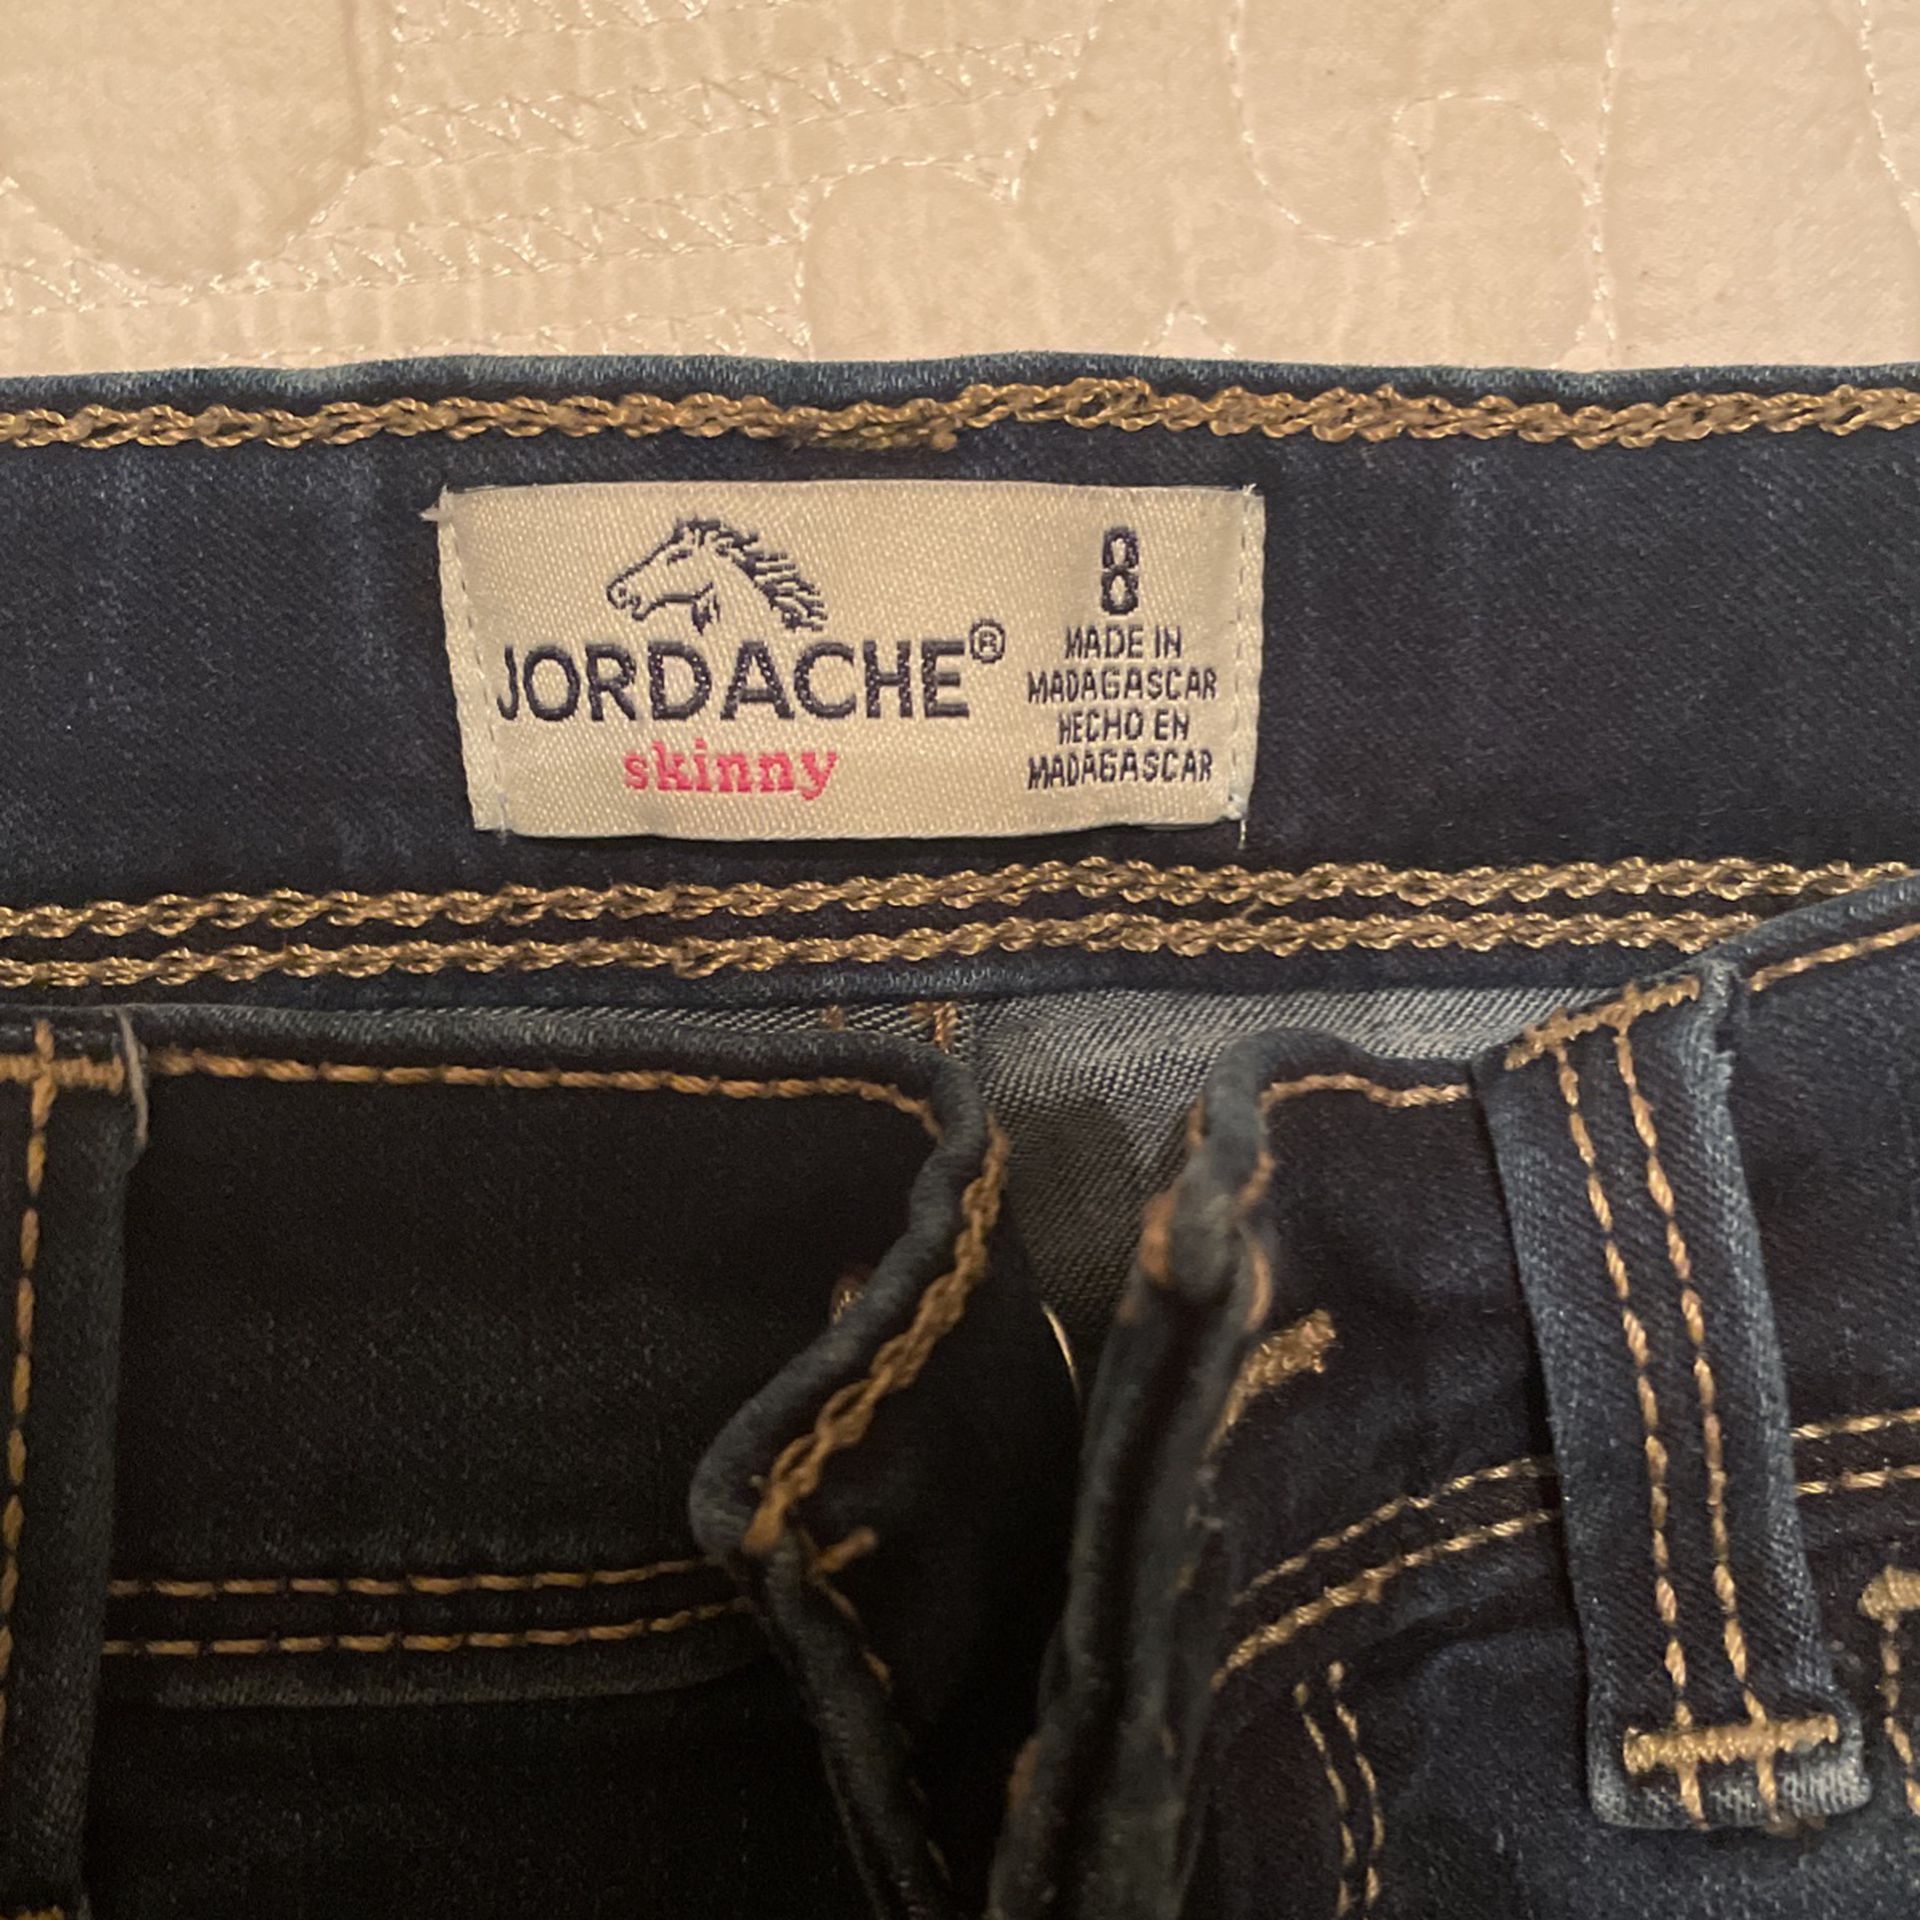 Jordache Skinny jeans for in Houston, - OfferUp